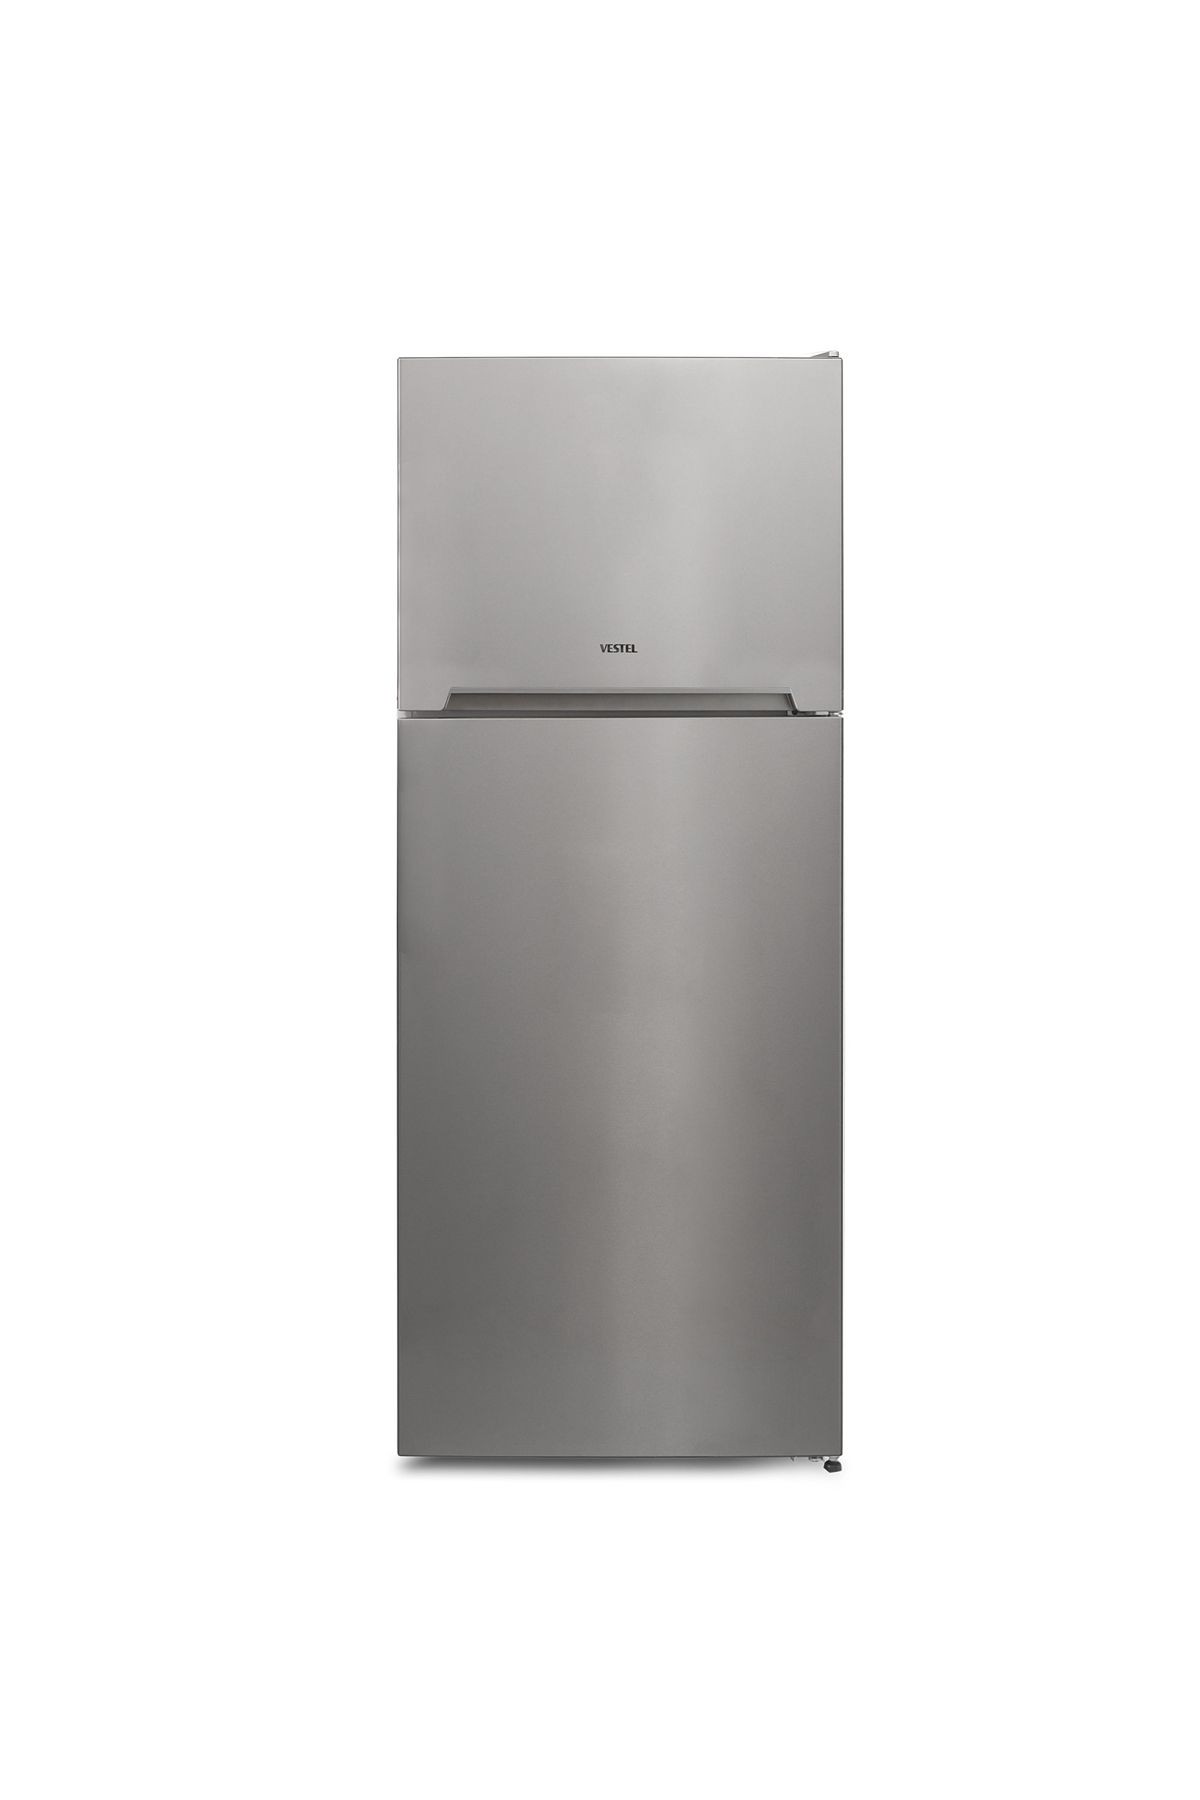 VESTEL Buzdolabı Nf 45001 G A